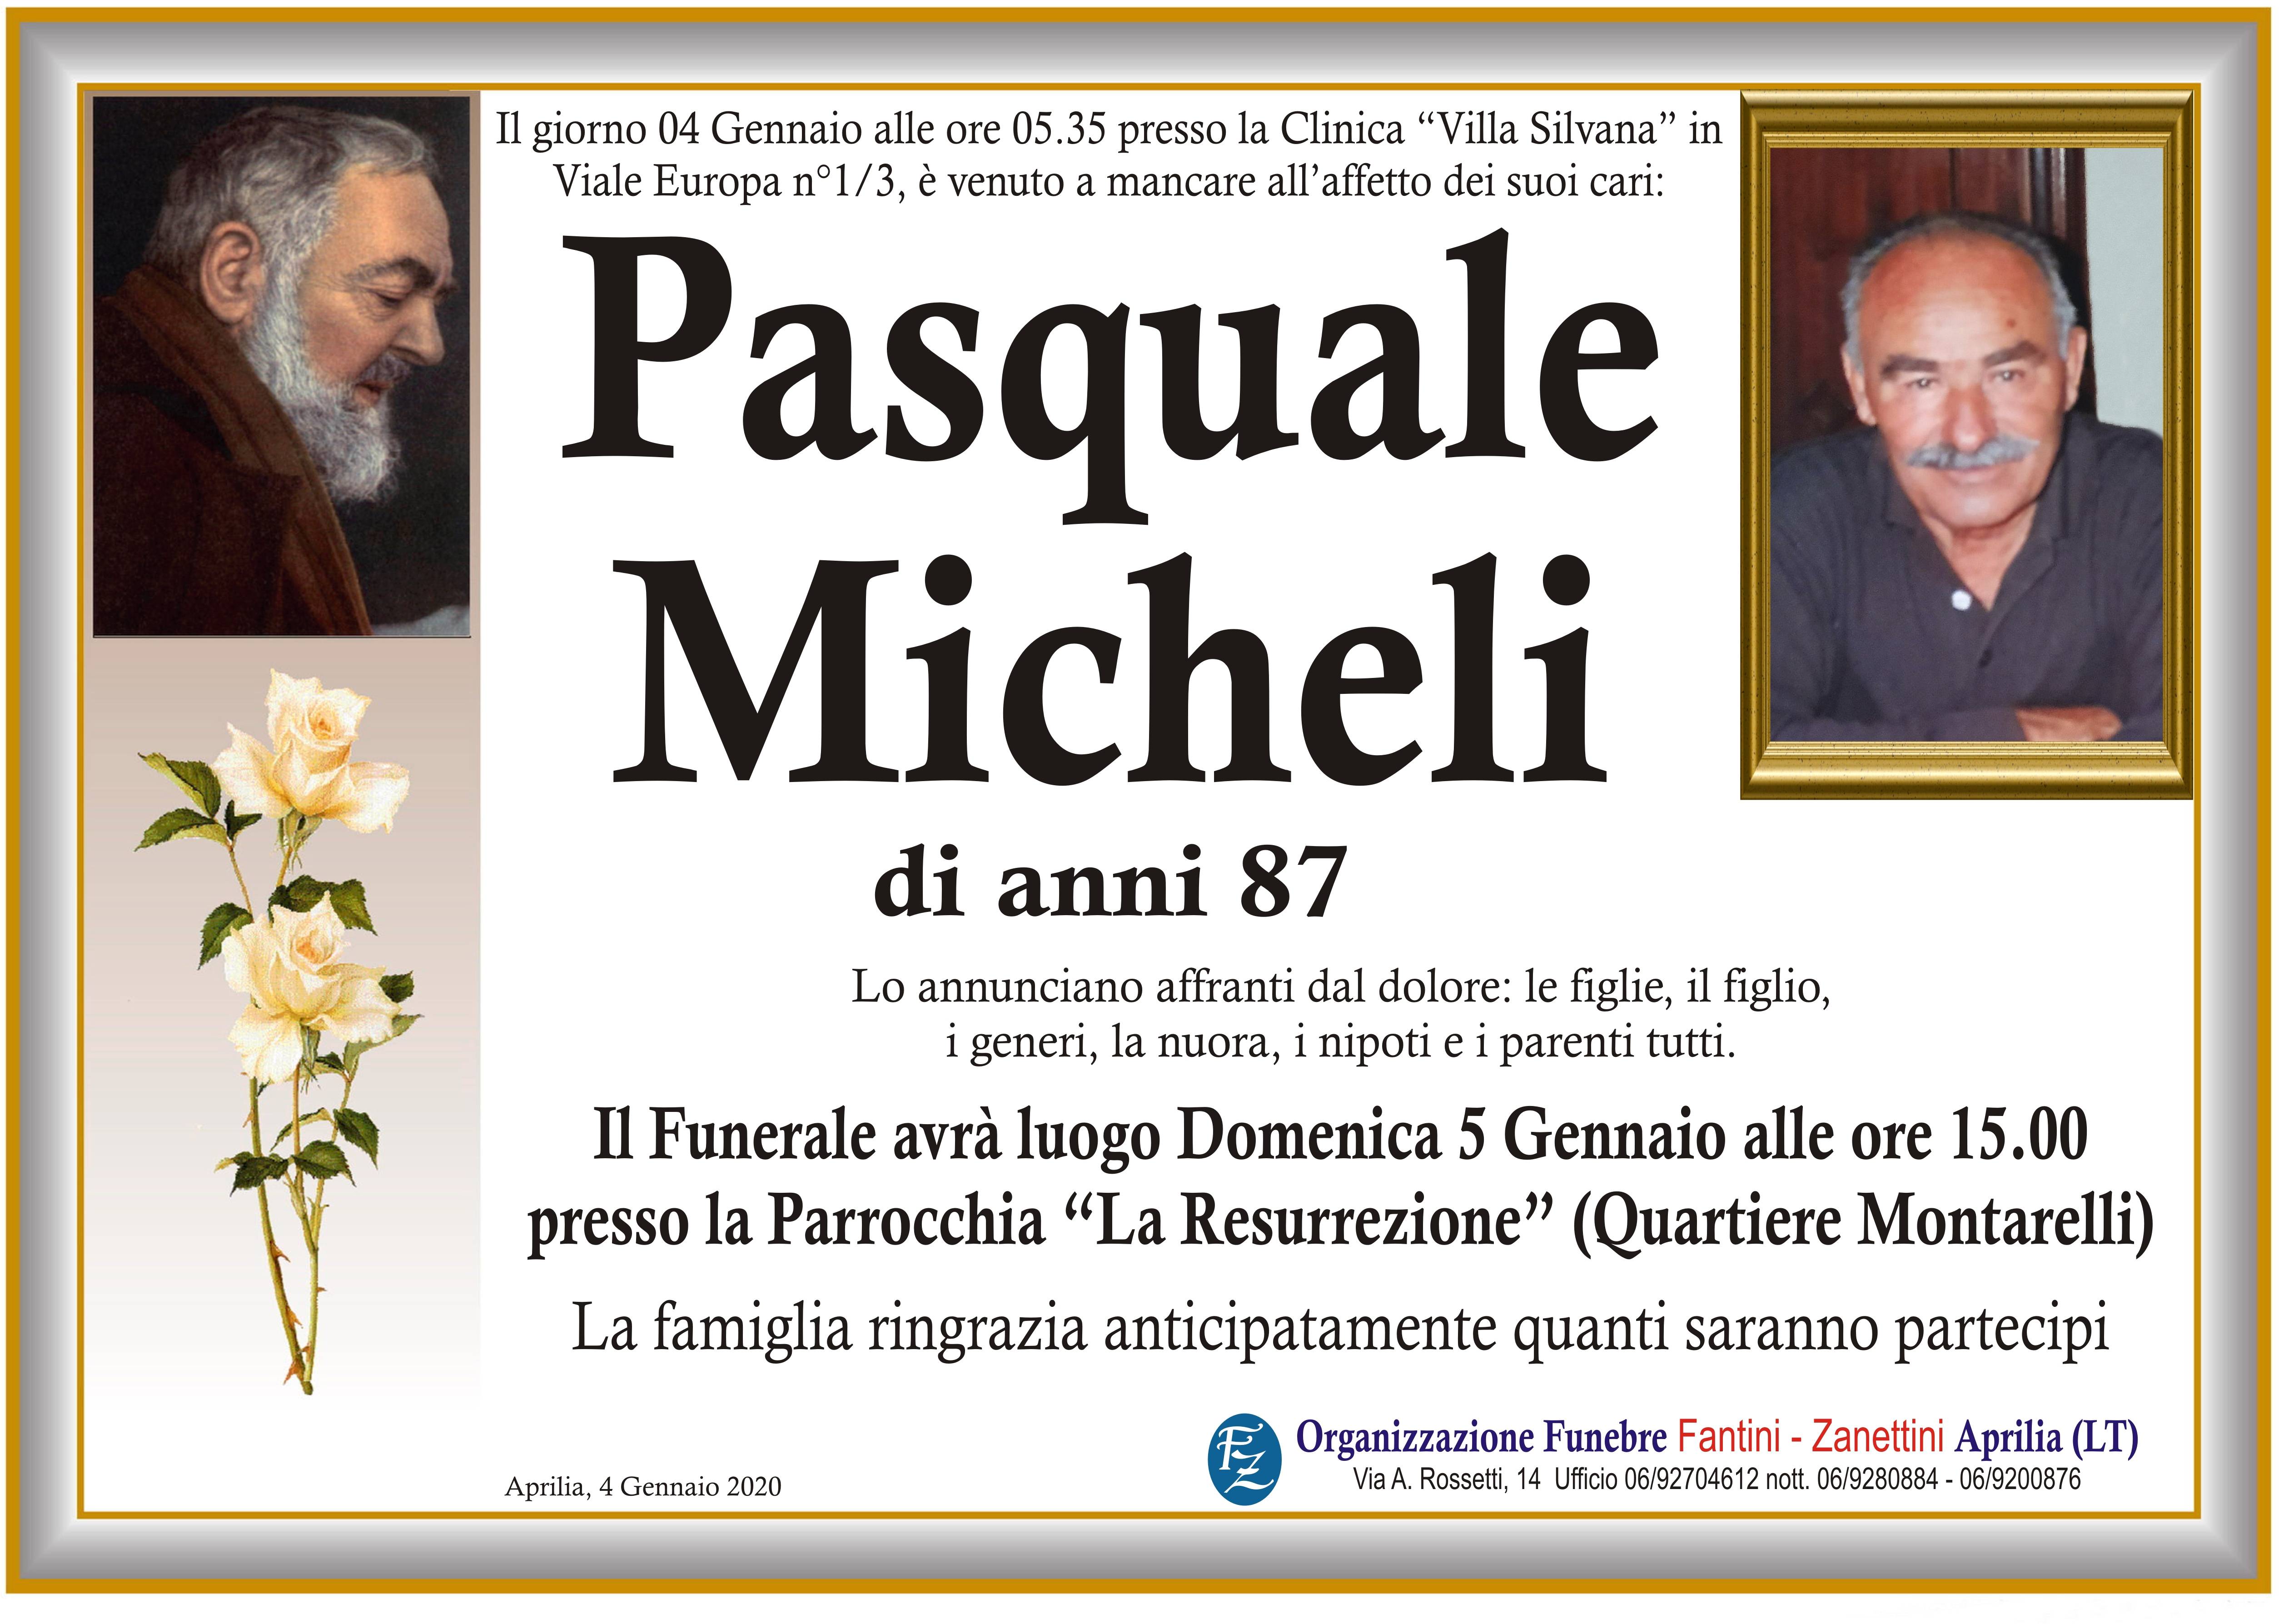 Pasquale Micheli